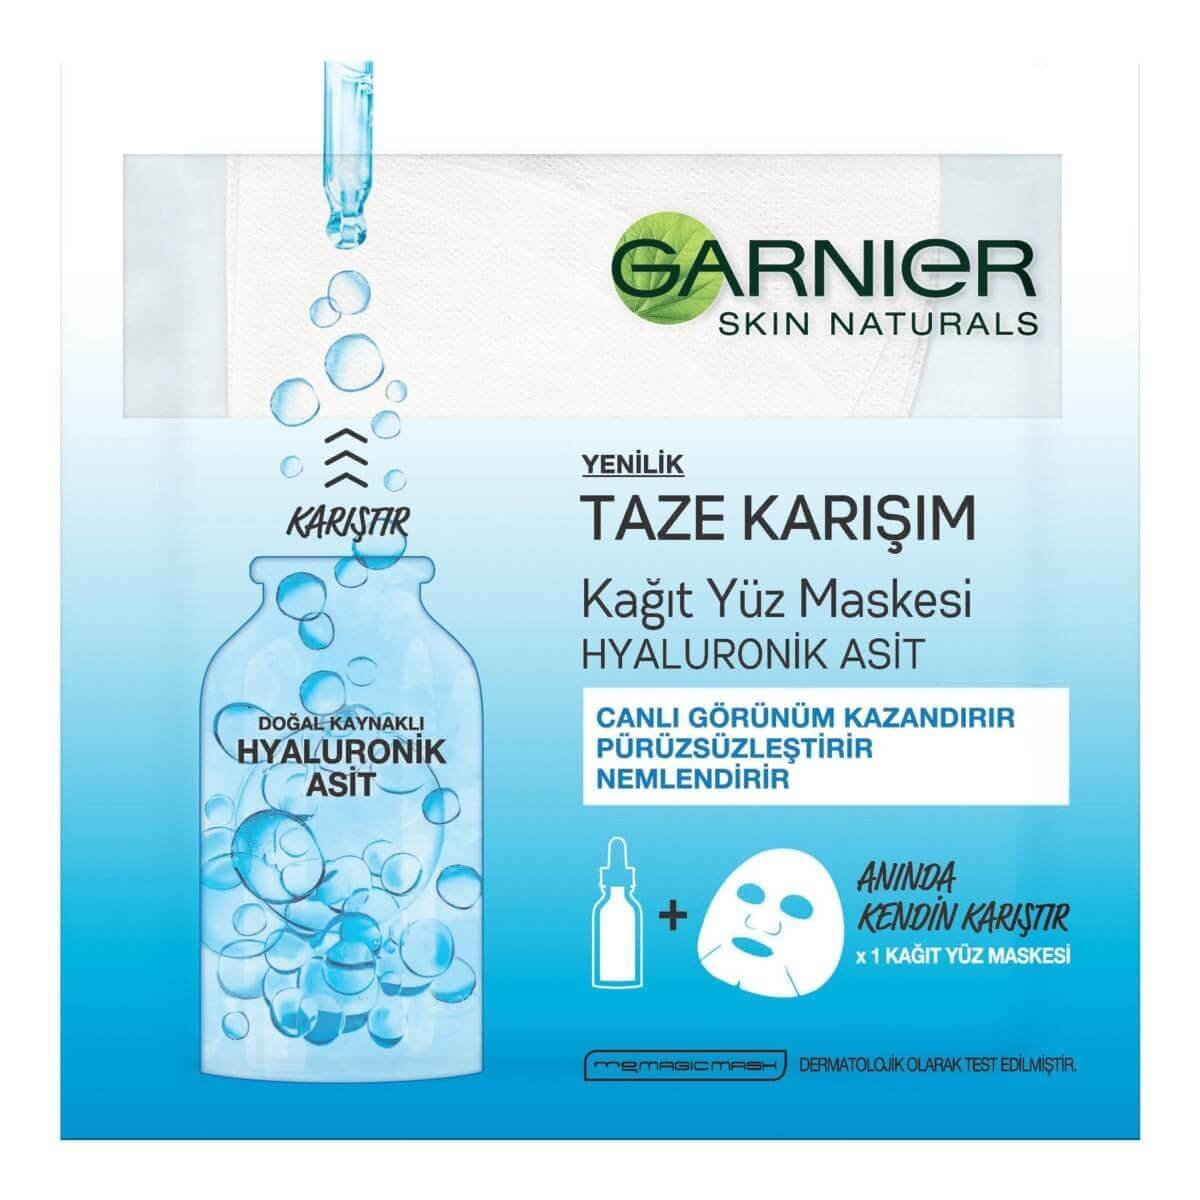 Garnier Taze Karışım Hyaluronik Asitli Tek Kullanımlık Kağıt Yüz Maskesi